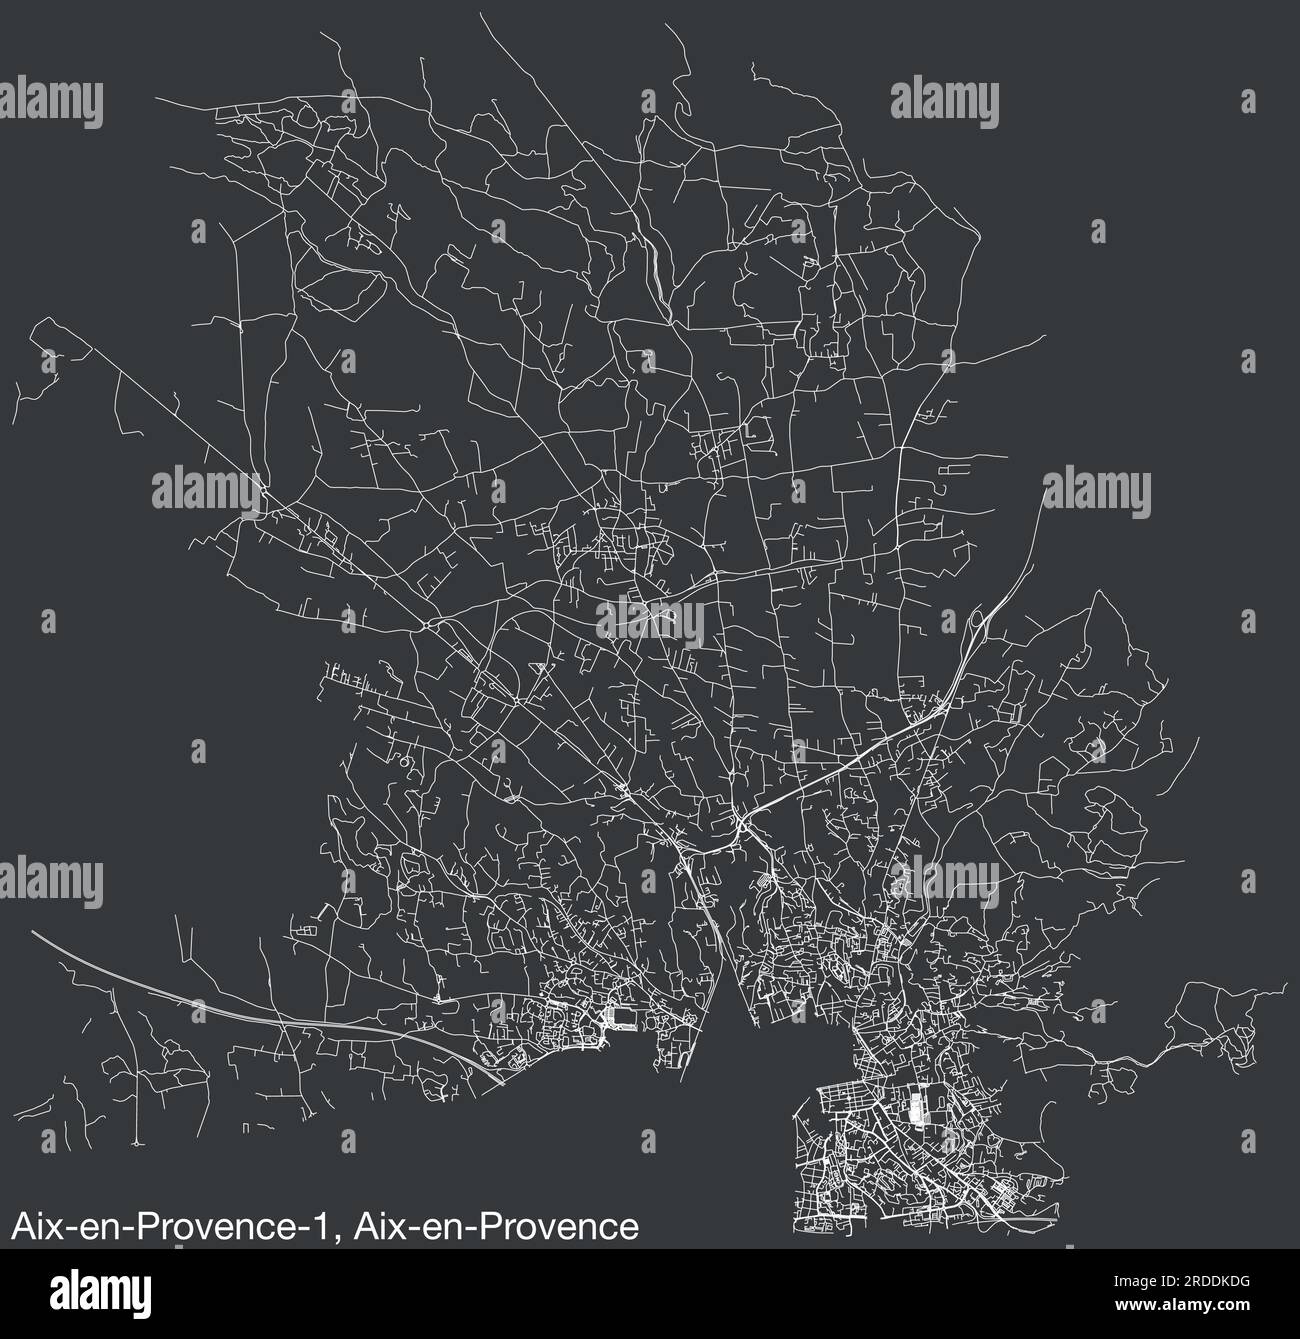 Mappa stradale del CANTONE AIX-EN-PROVENCE-1, AIX-EN-PROVENCE Illustrazione Vettoriale